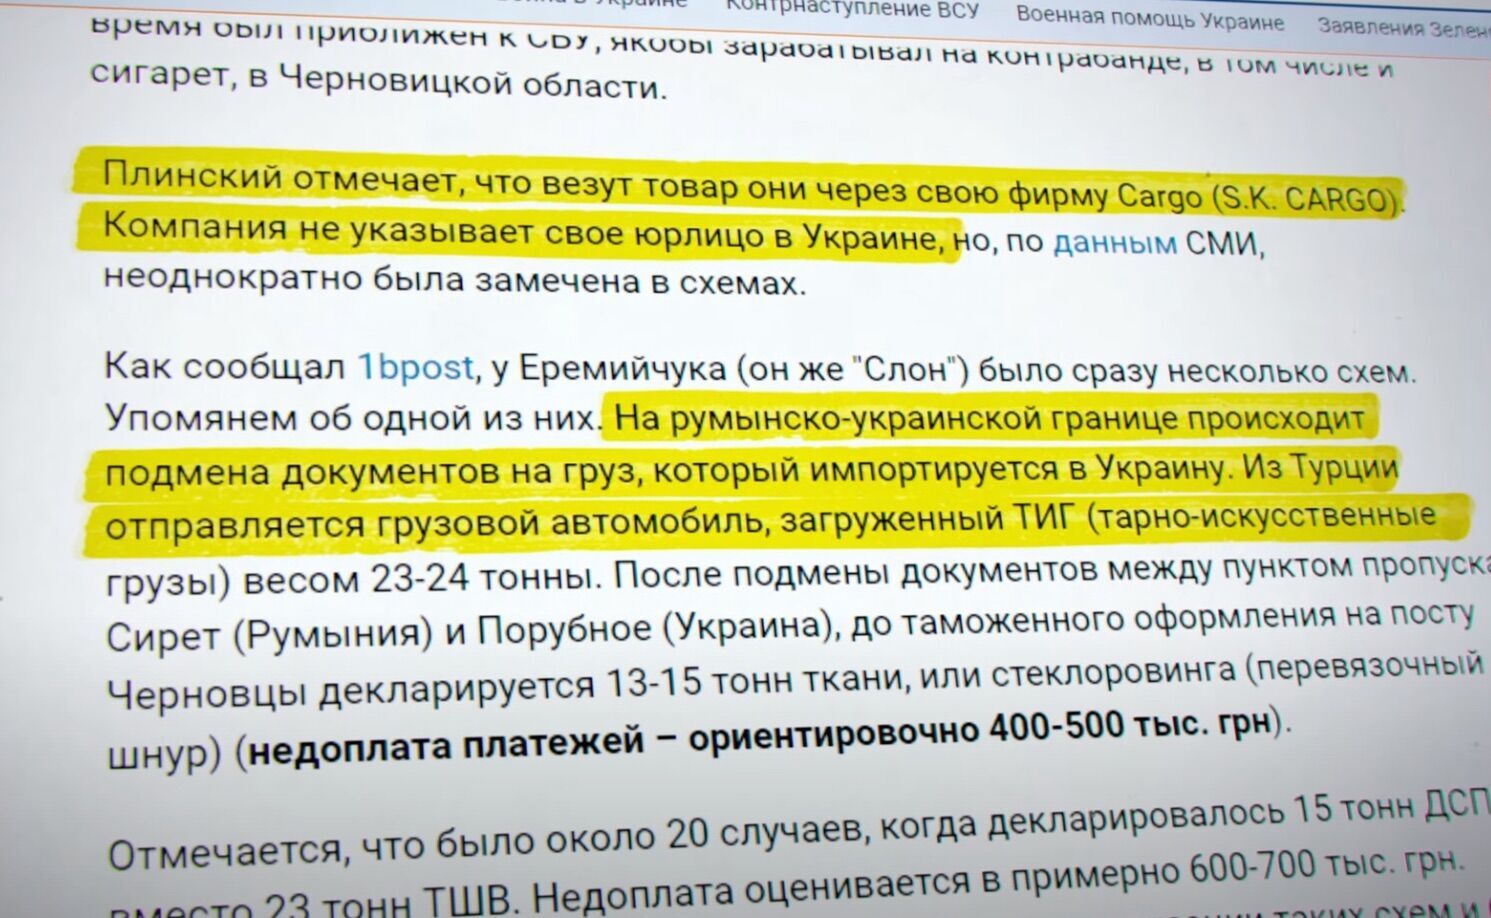 О теневых схемах с растаможкой, в которых замешан Еремийчук, много писали СМИ